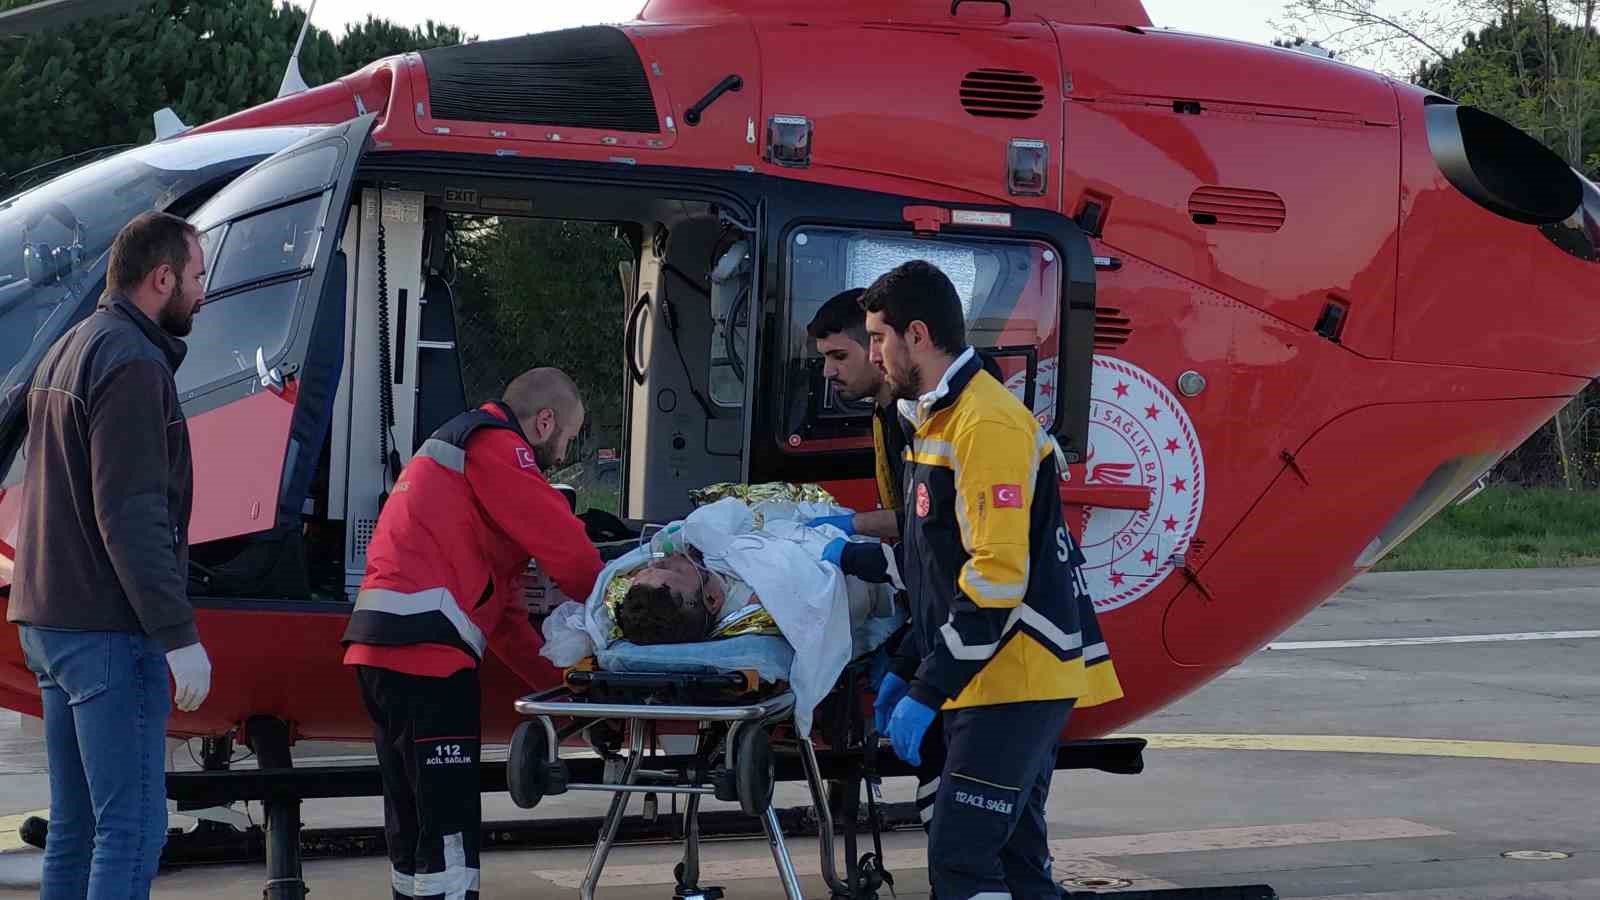 Mangal yakmak isterken benzinin parlaması sonucu yandılar: Yardıma ambulans helikopter yetişti
